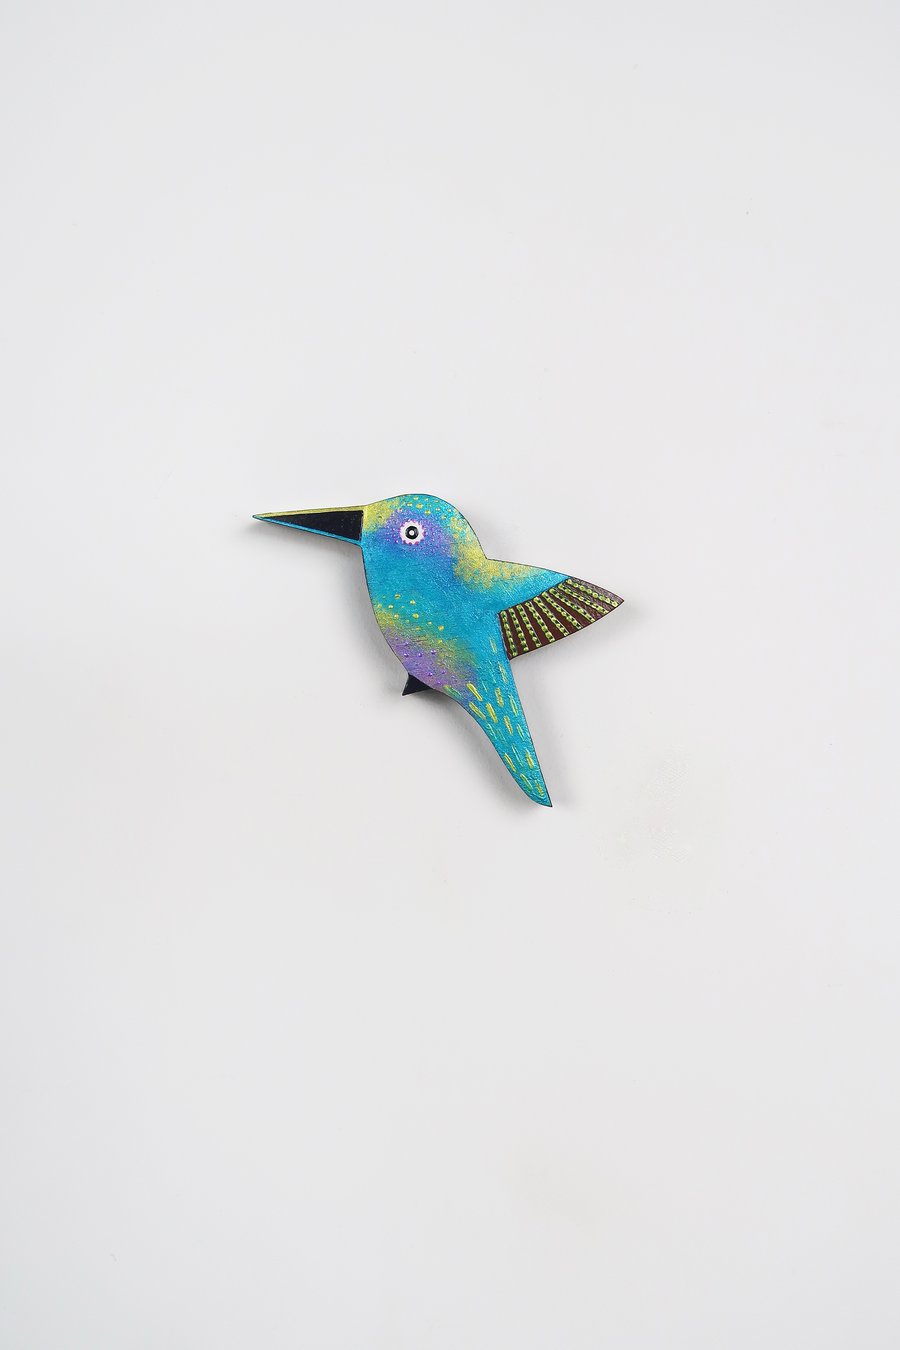 Hummingbird wall art, miniature flying bird ornament, wooden bird decor.